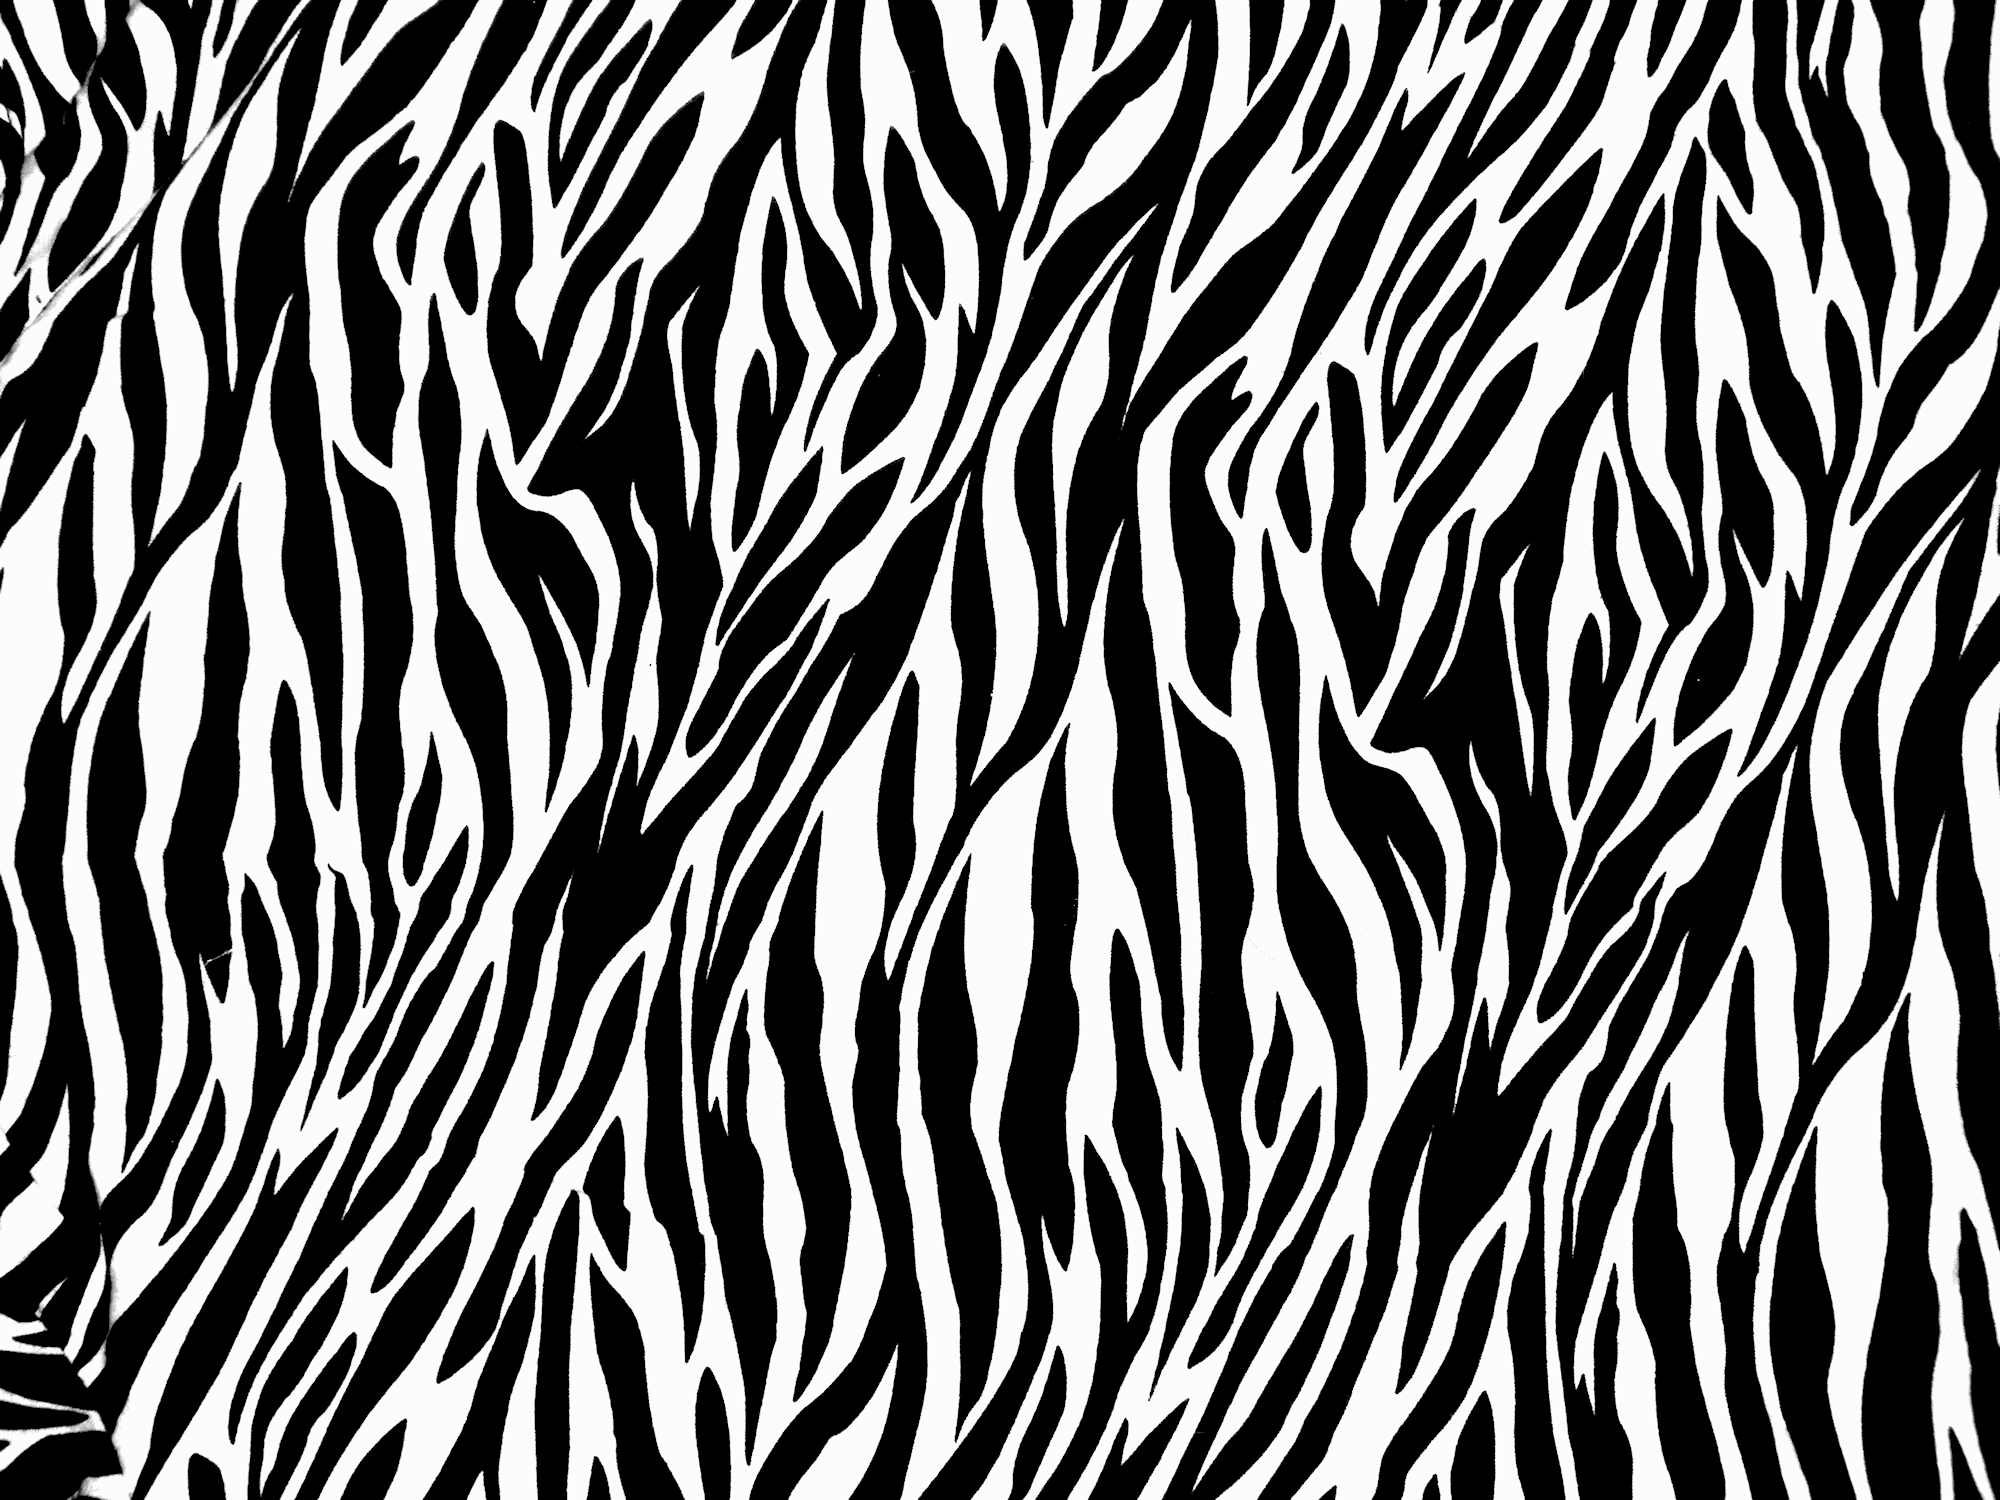 FunMozar – Zebra Print